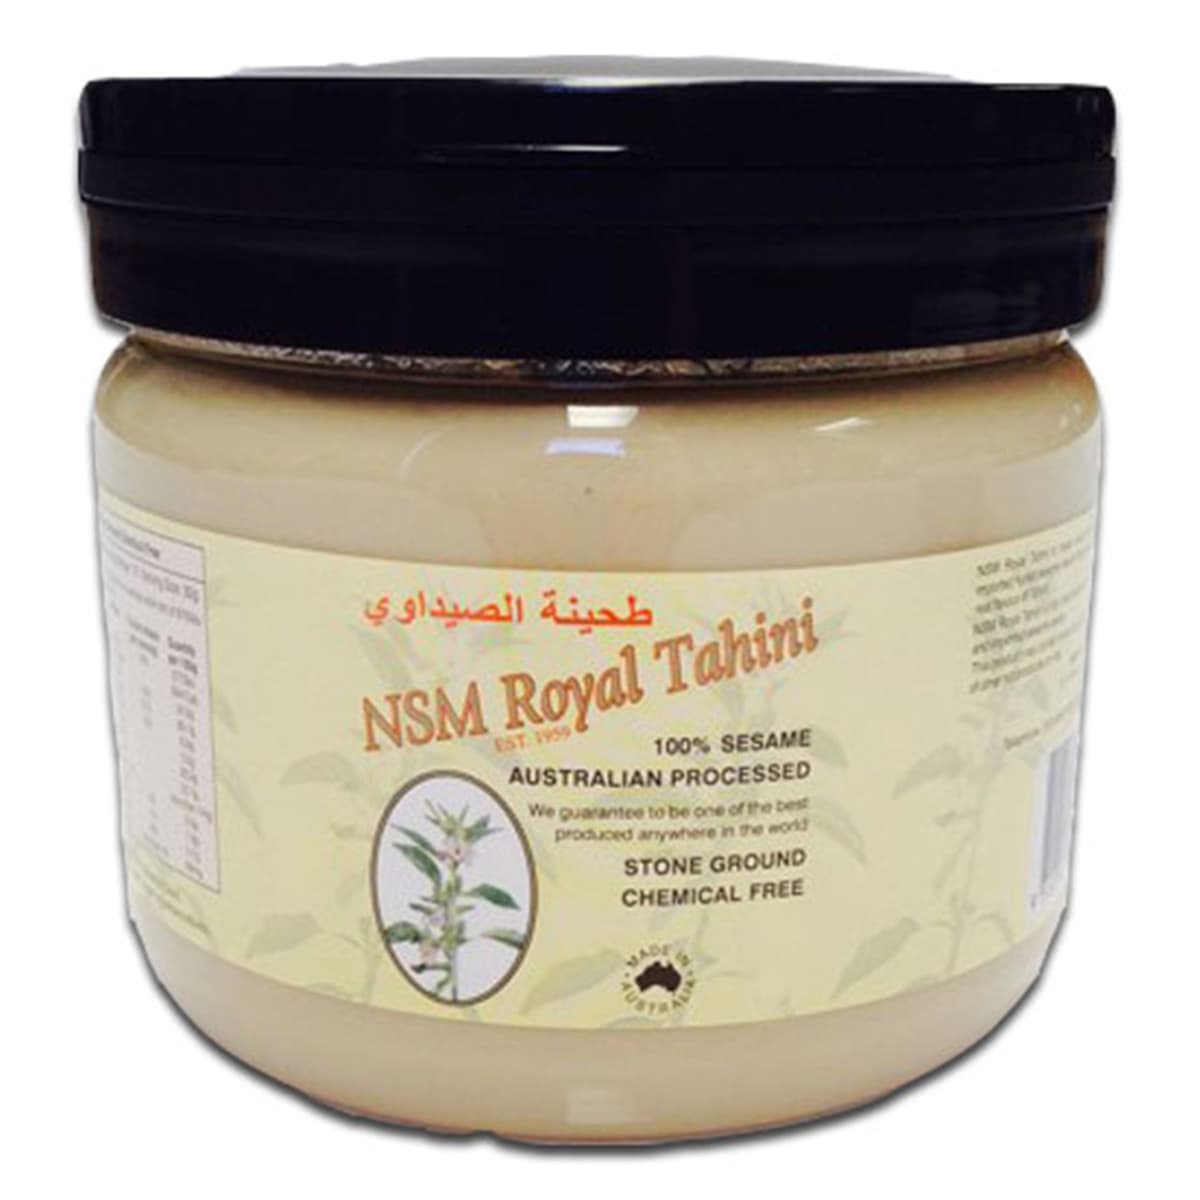 Buy NSM Royal Tahini (100% Sesame Australian Processed) - 350 gm